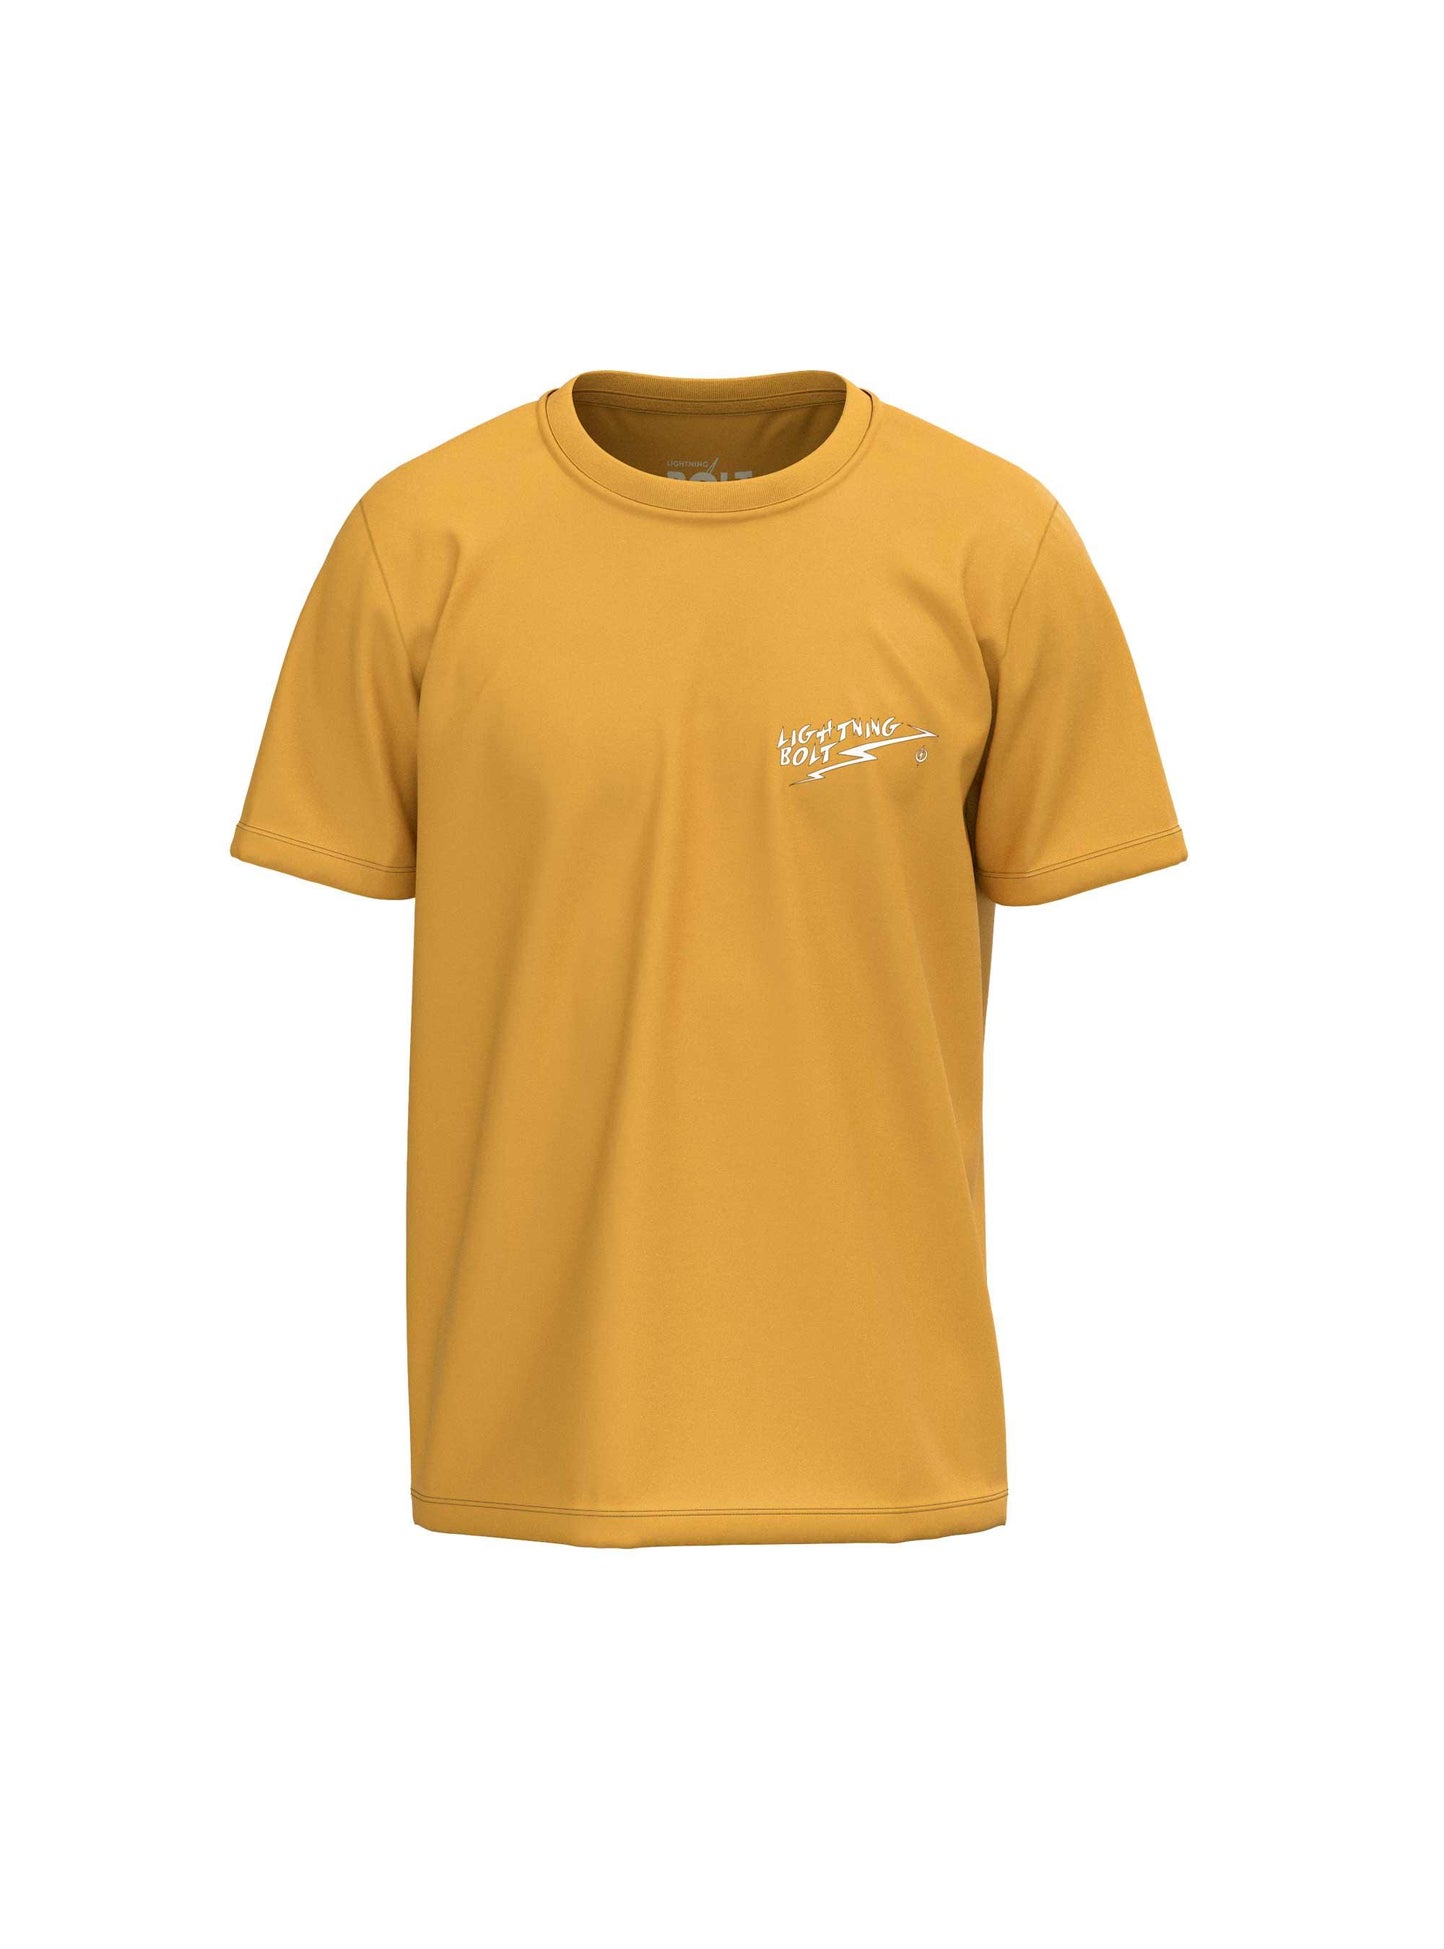 Camiseta De Manga Corta Lightning Bolt Finny T-shirt - amarillo - 